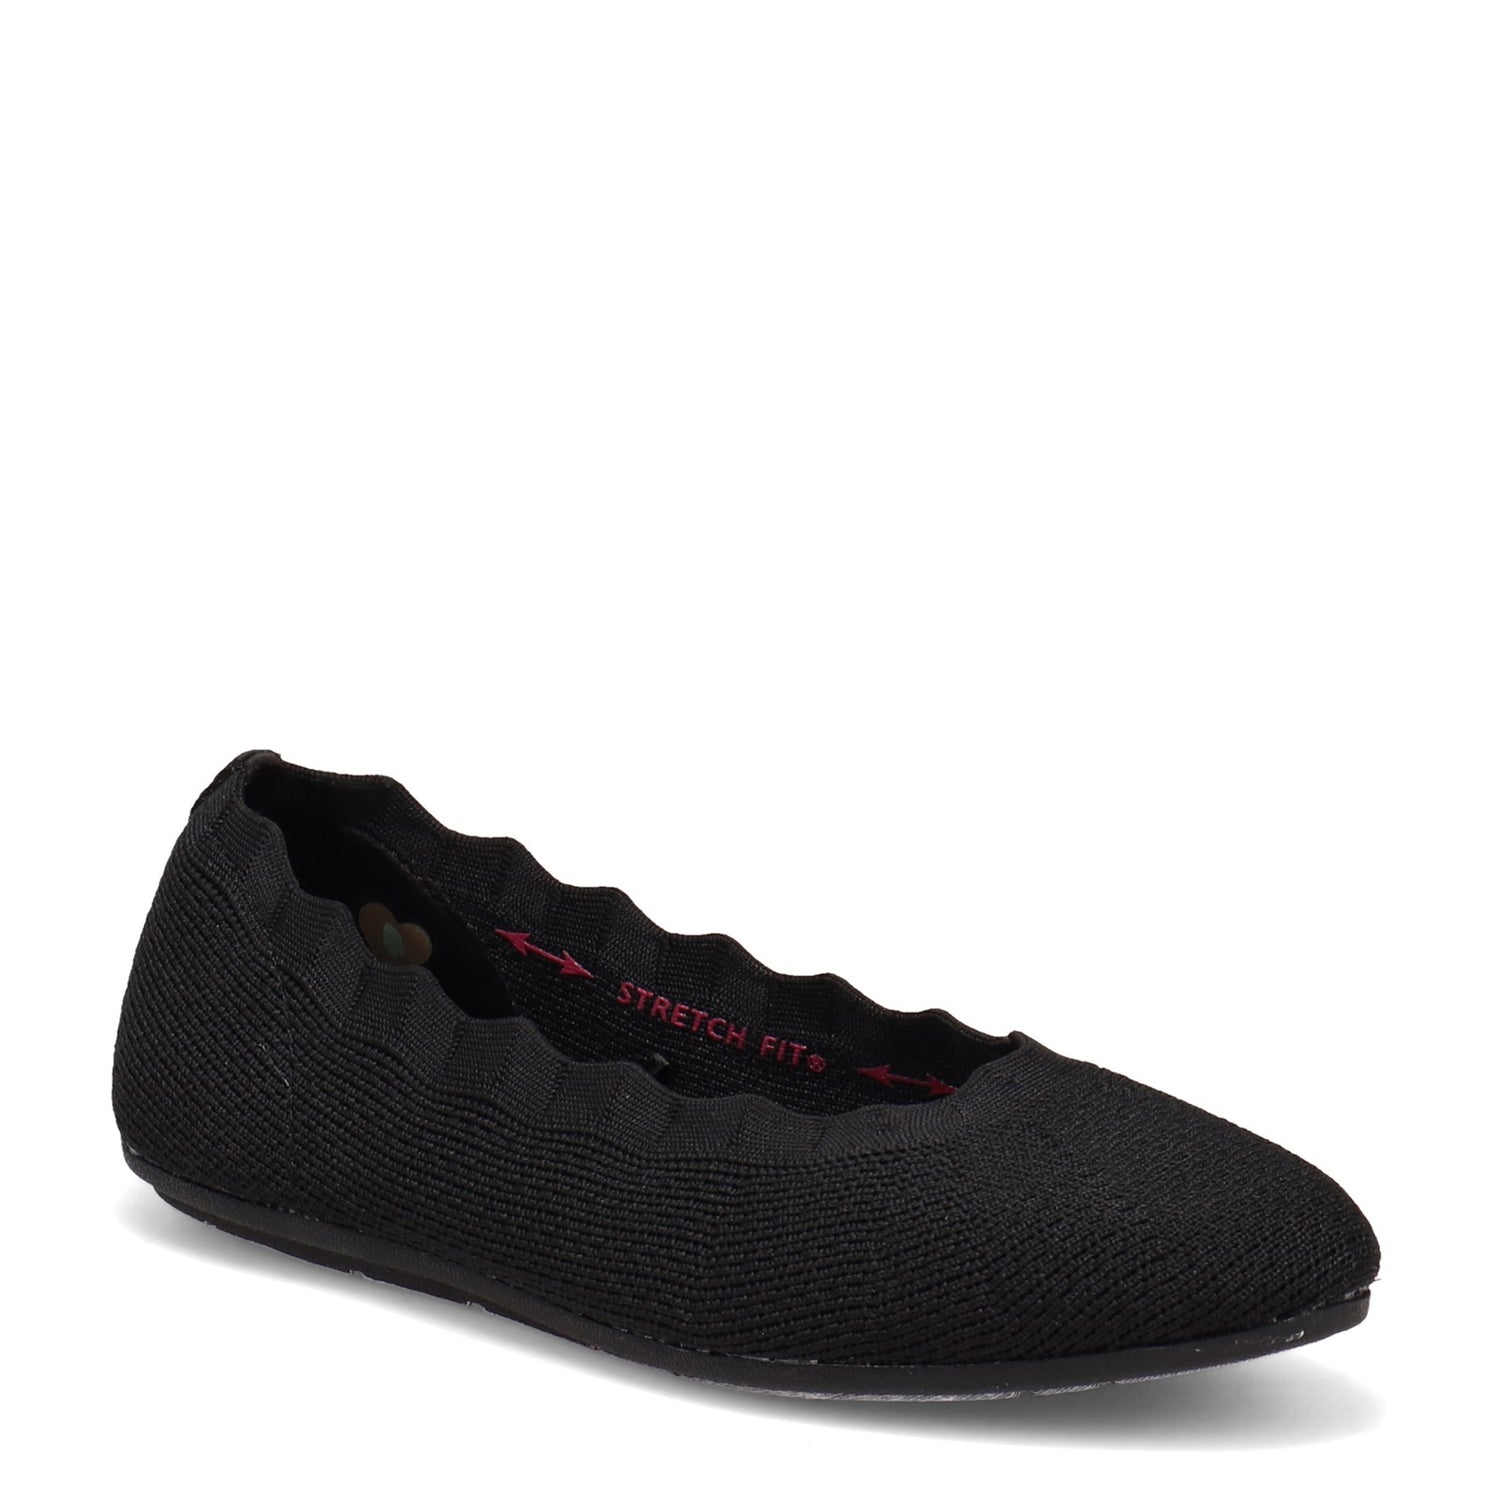 Peltz Shoes  Women's Skechers Cleo 2.0 - Love Spell Flat BLACK 158343-BLK